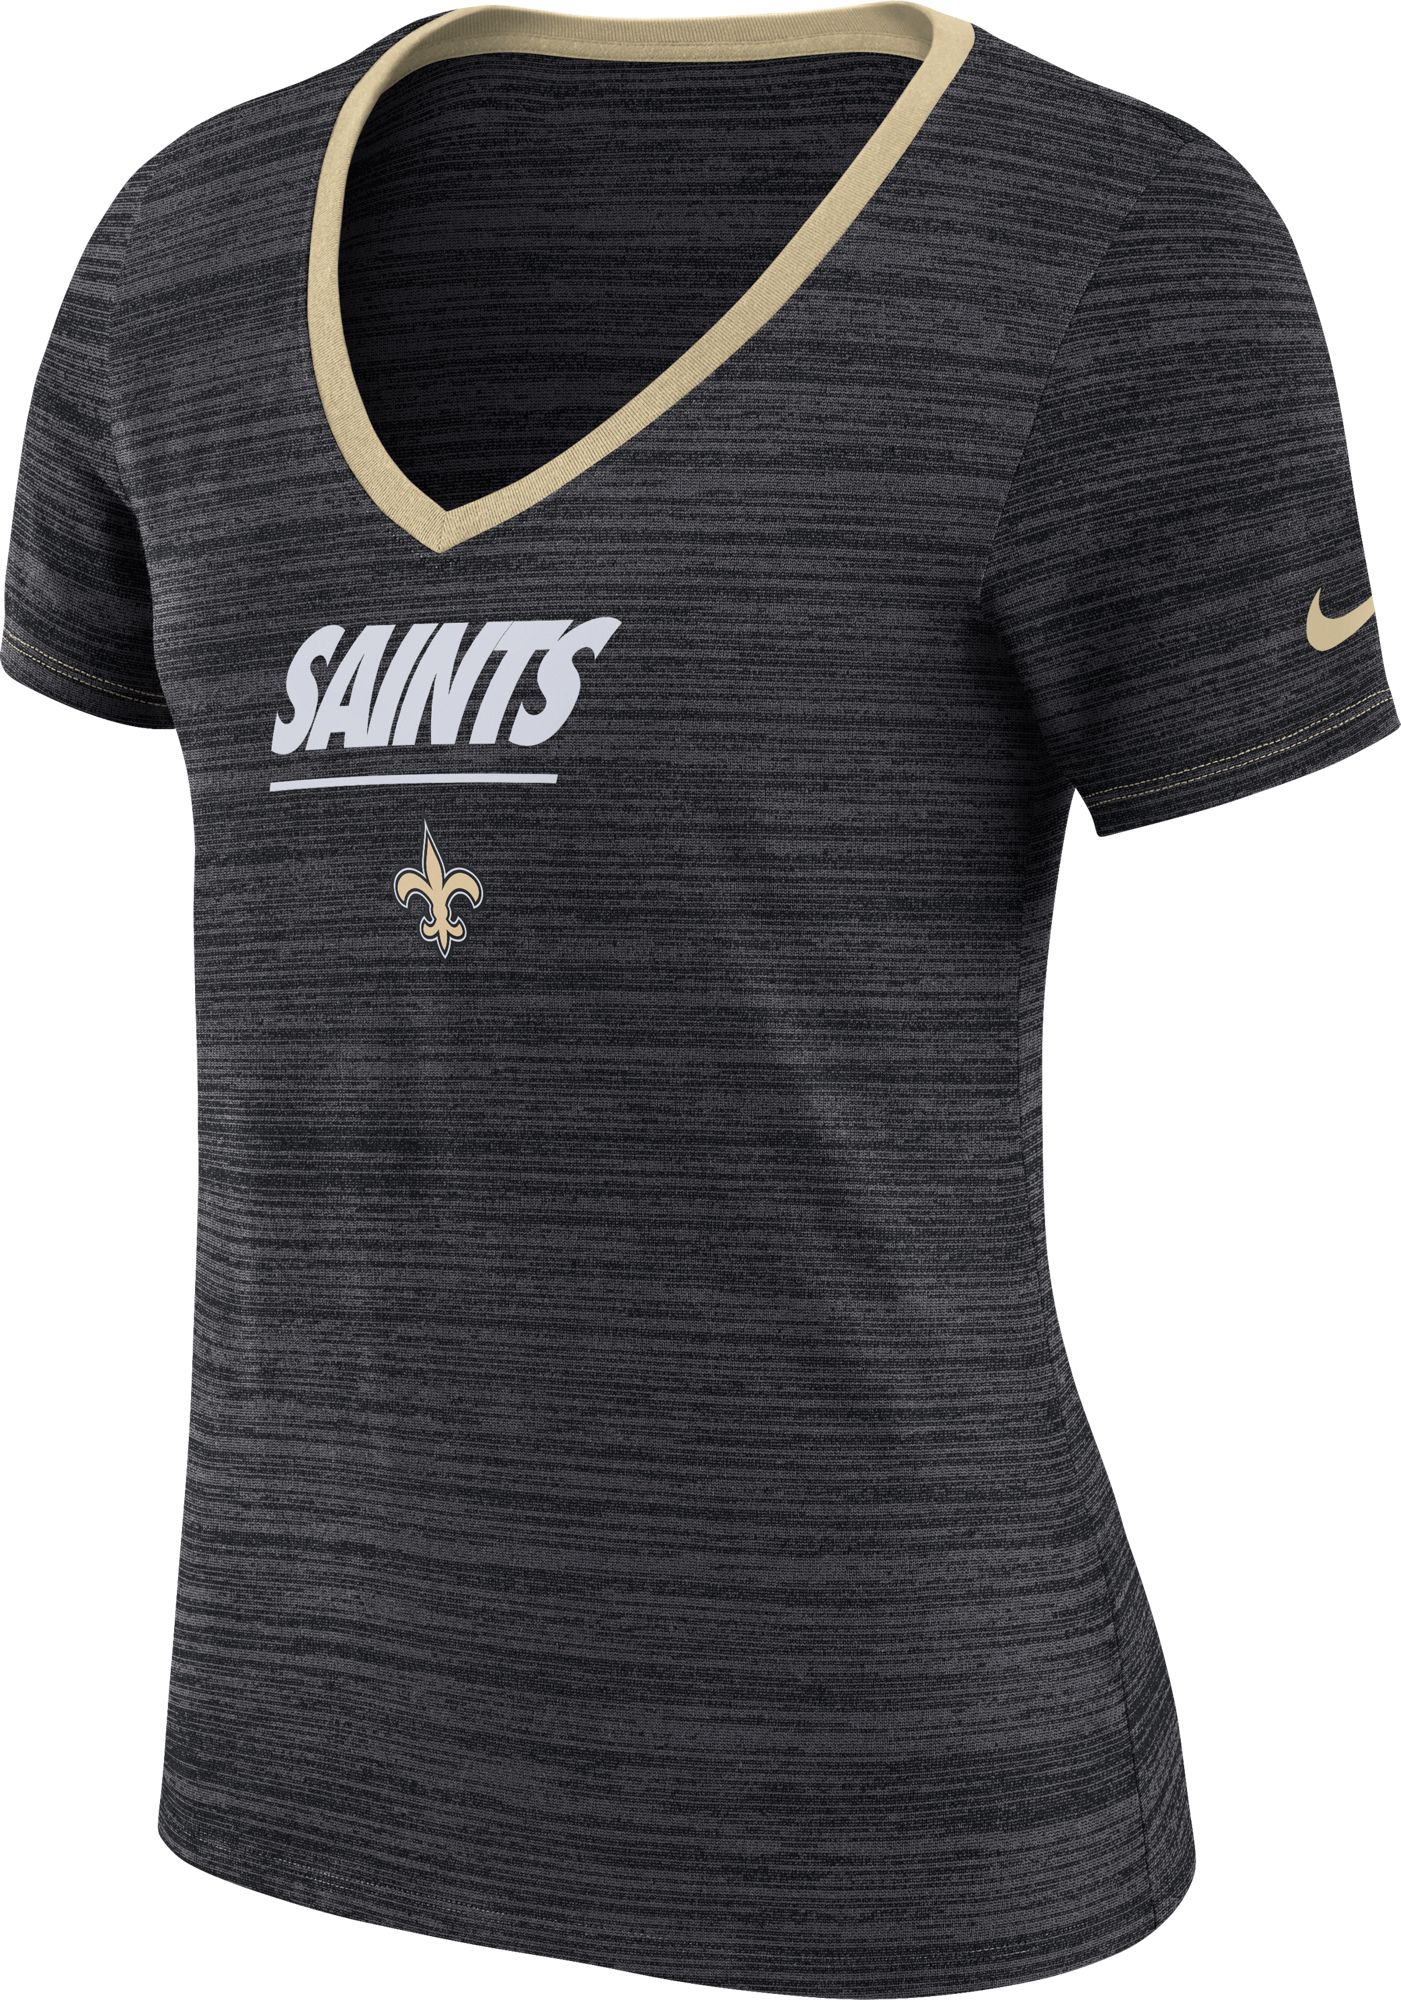 New Orleans Saints Women's Apparel | NFL Fan Shop at DICK'S